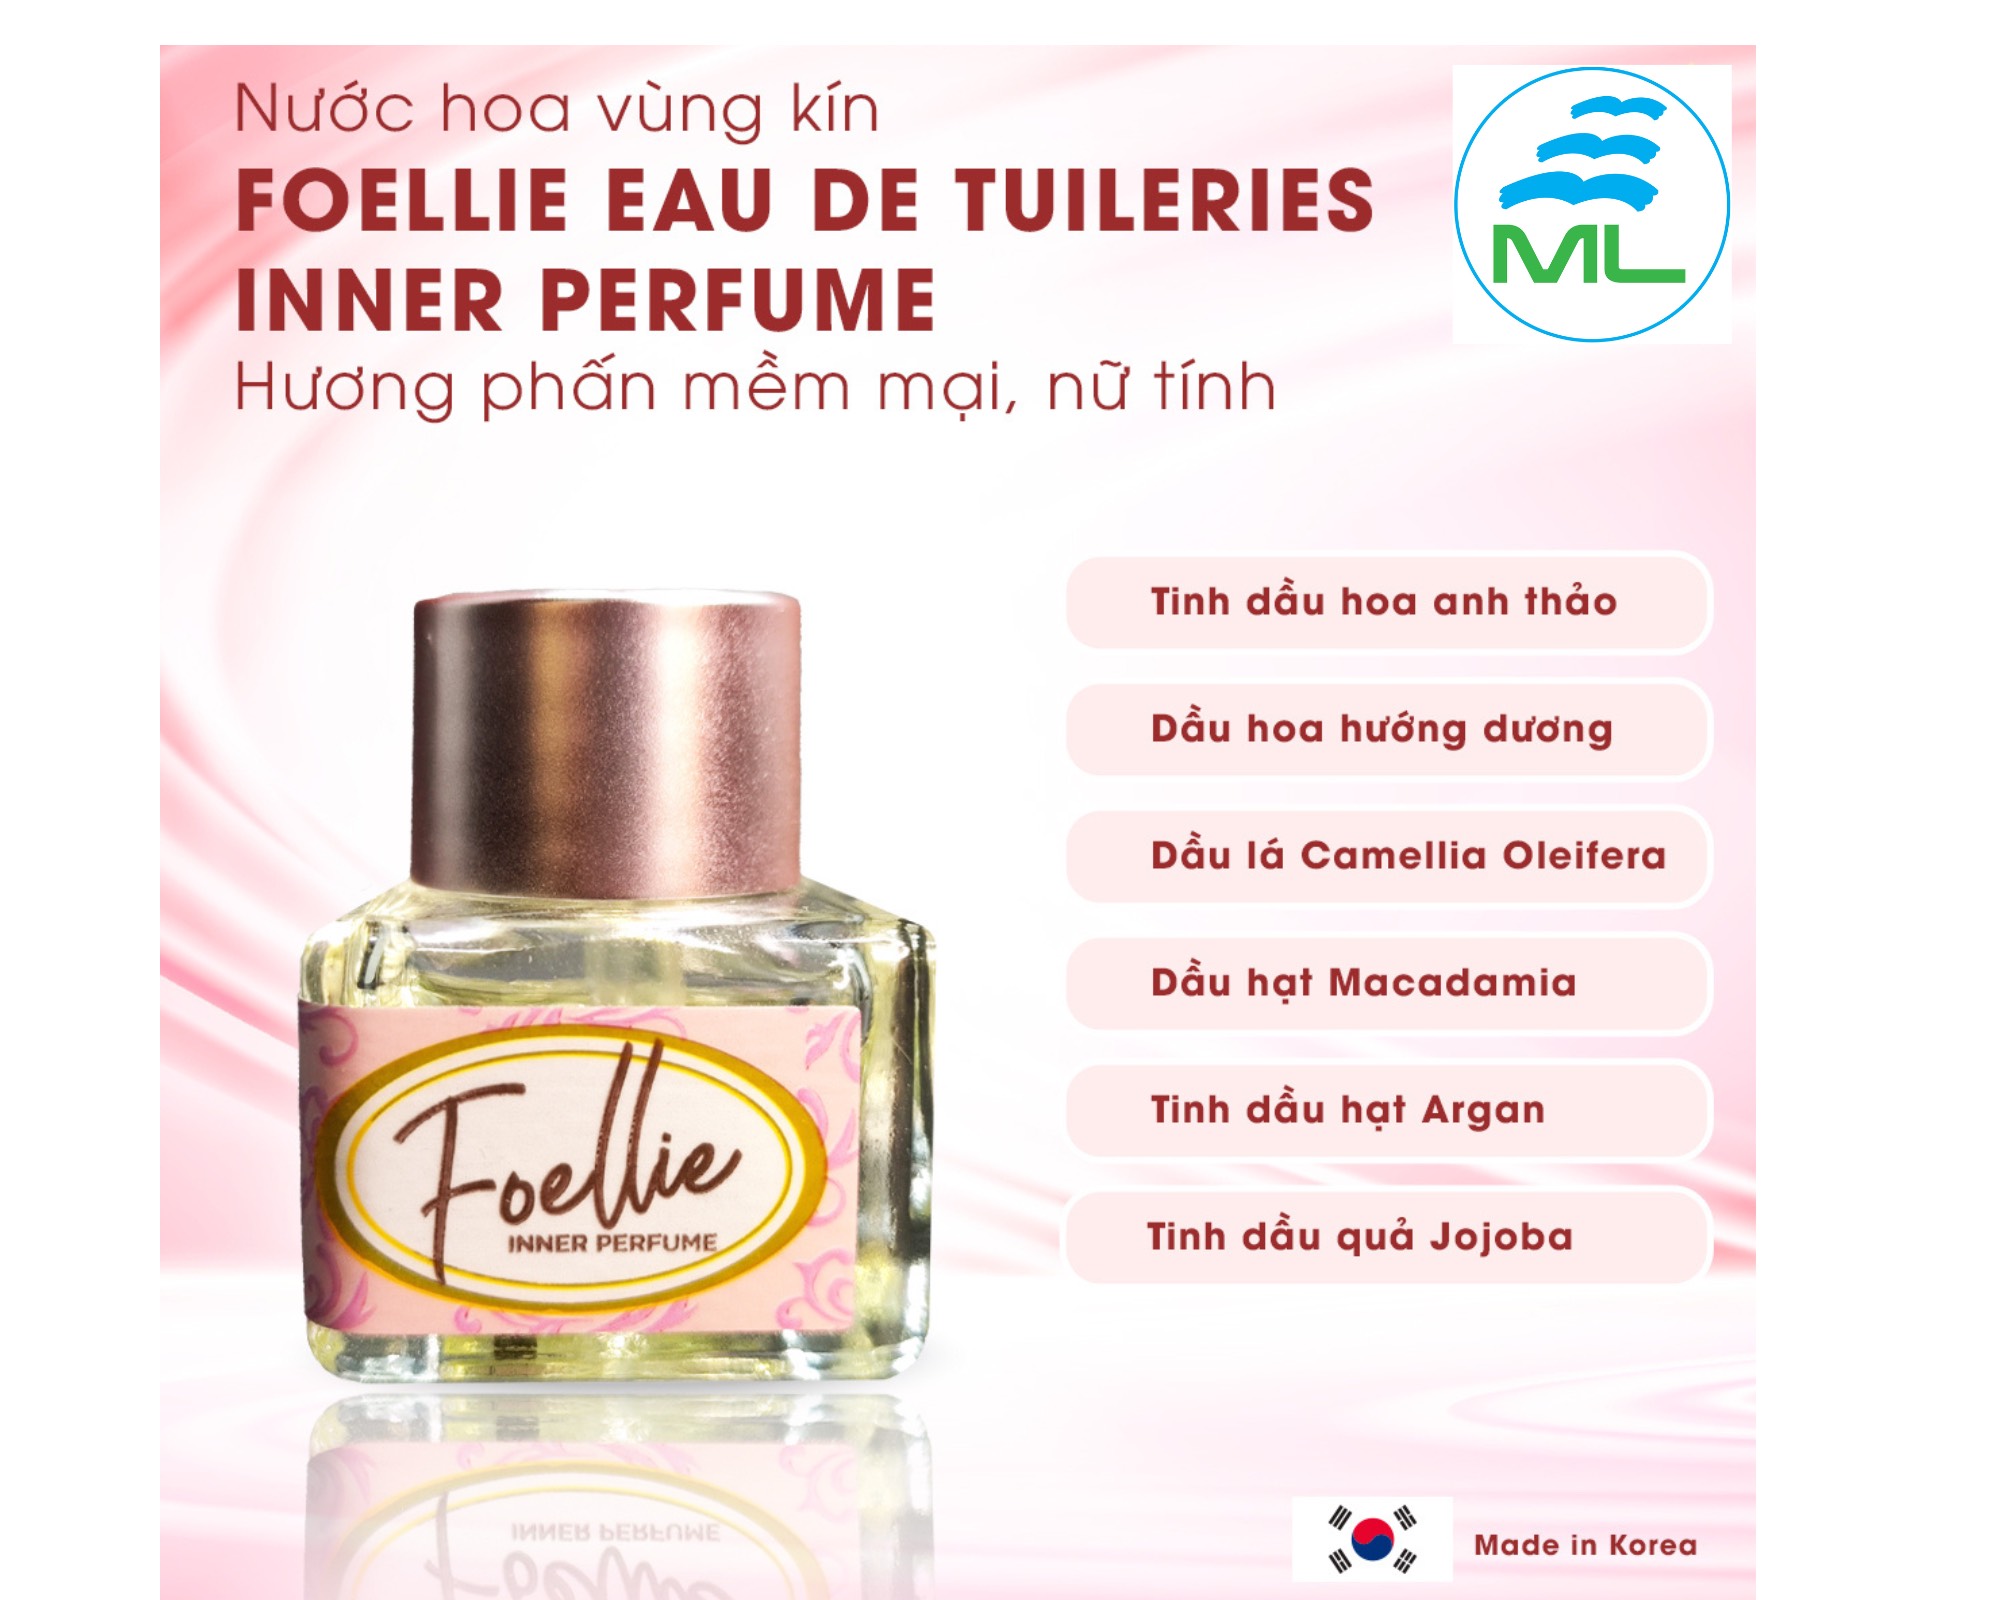 Nước hoa vùng kín Foellie Eau De Innerb Perfume - Tuileries khử mùi nhập khẩu chính hãng Hàn Quốc ( Hộp tròn hồng)